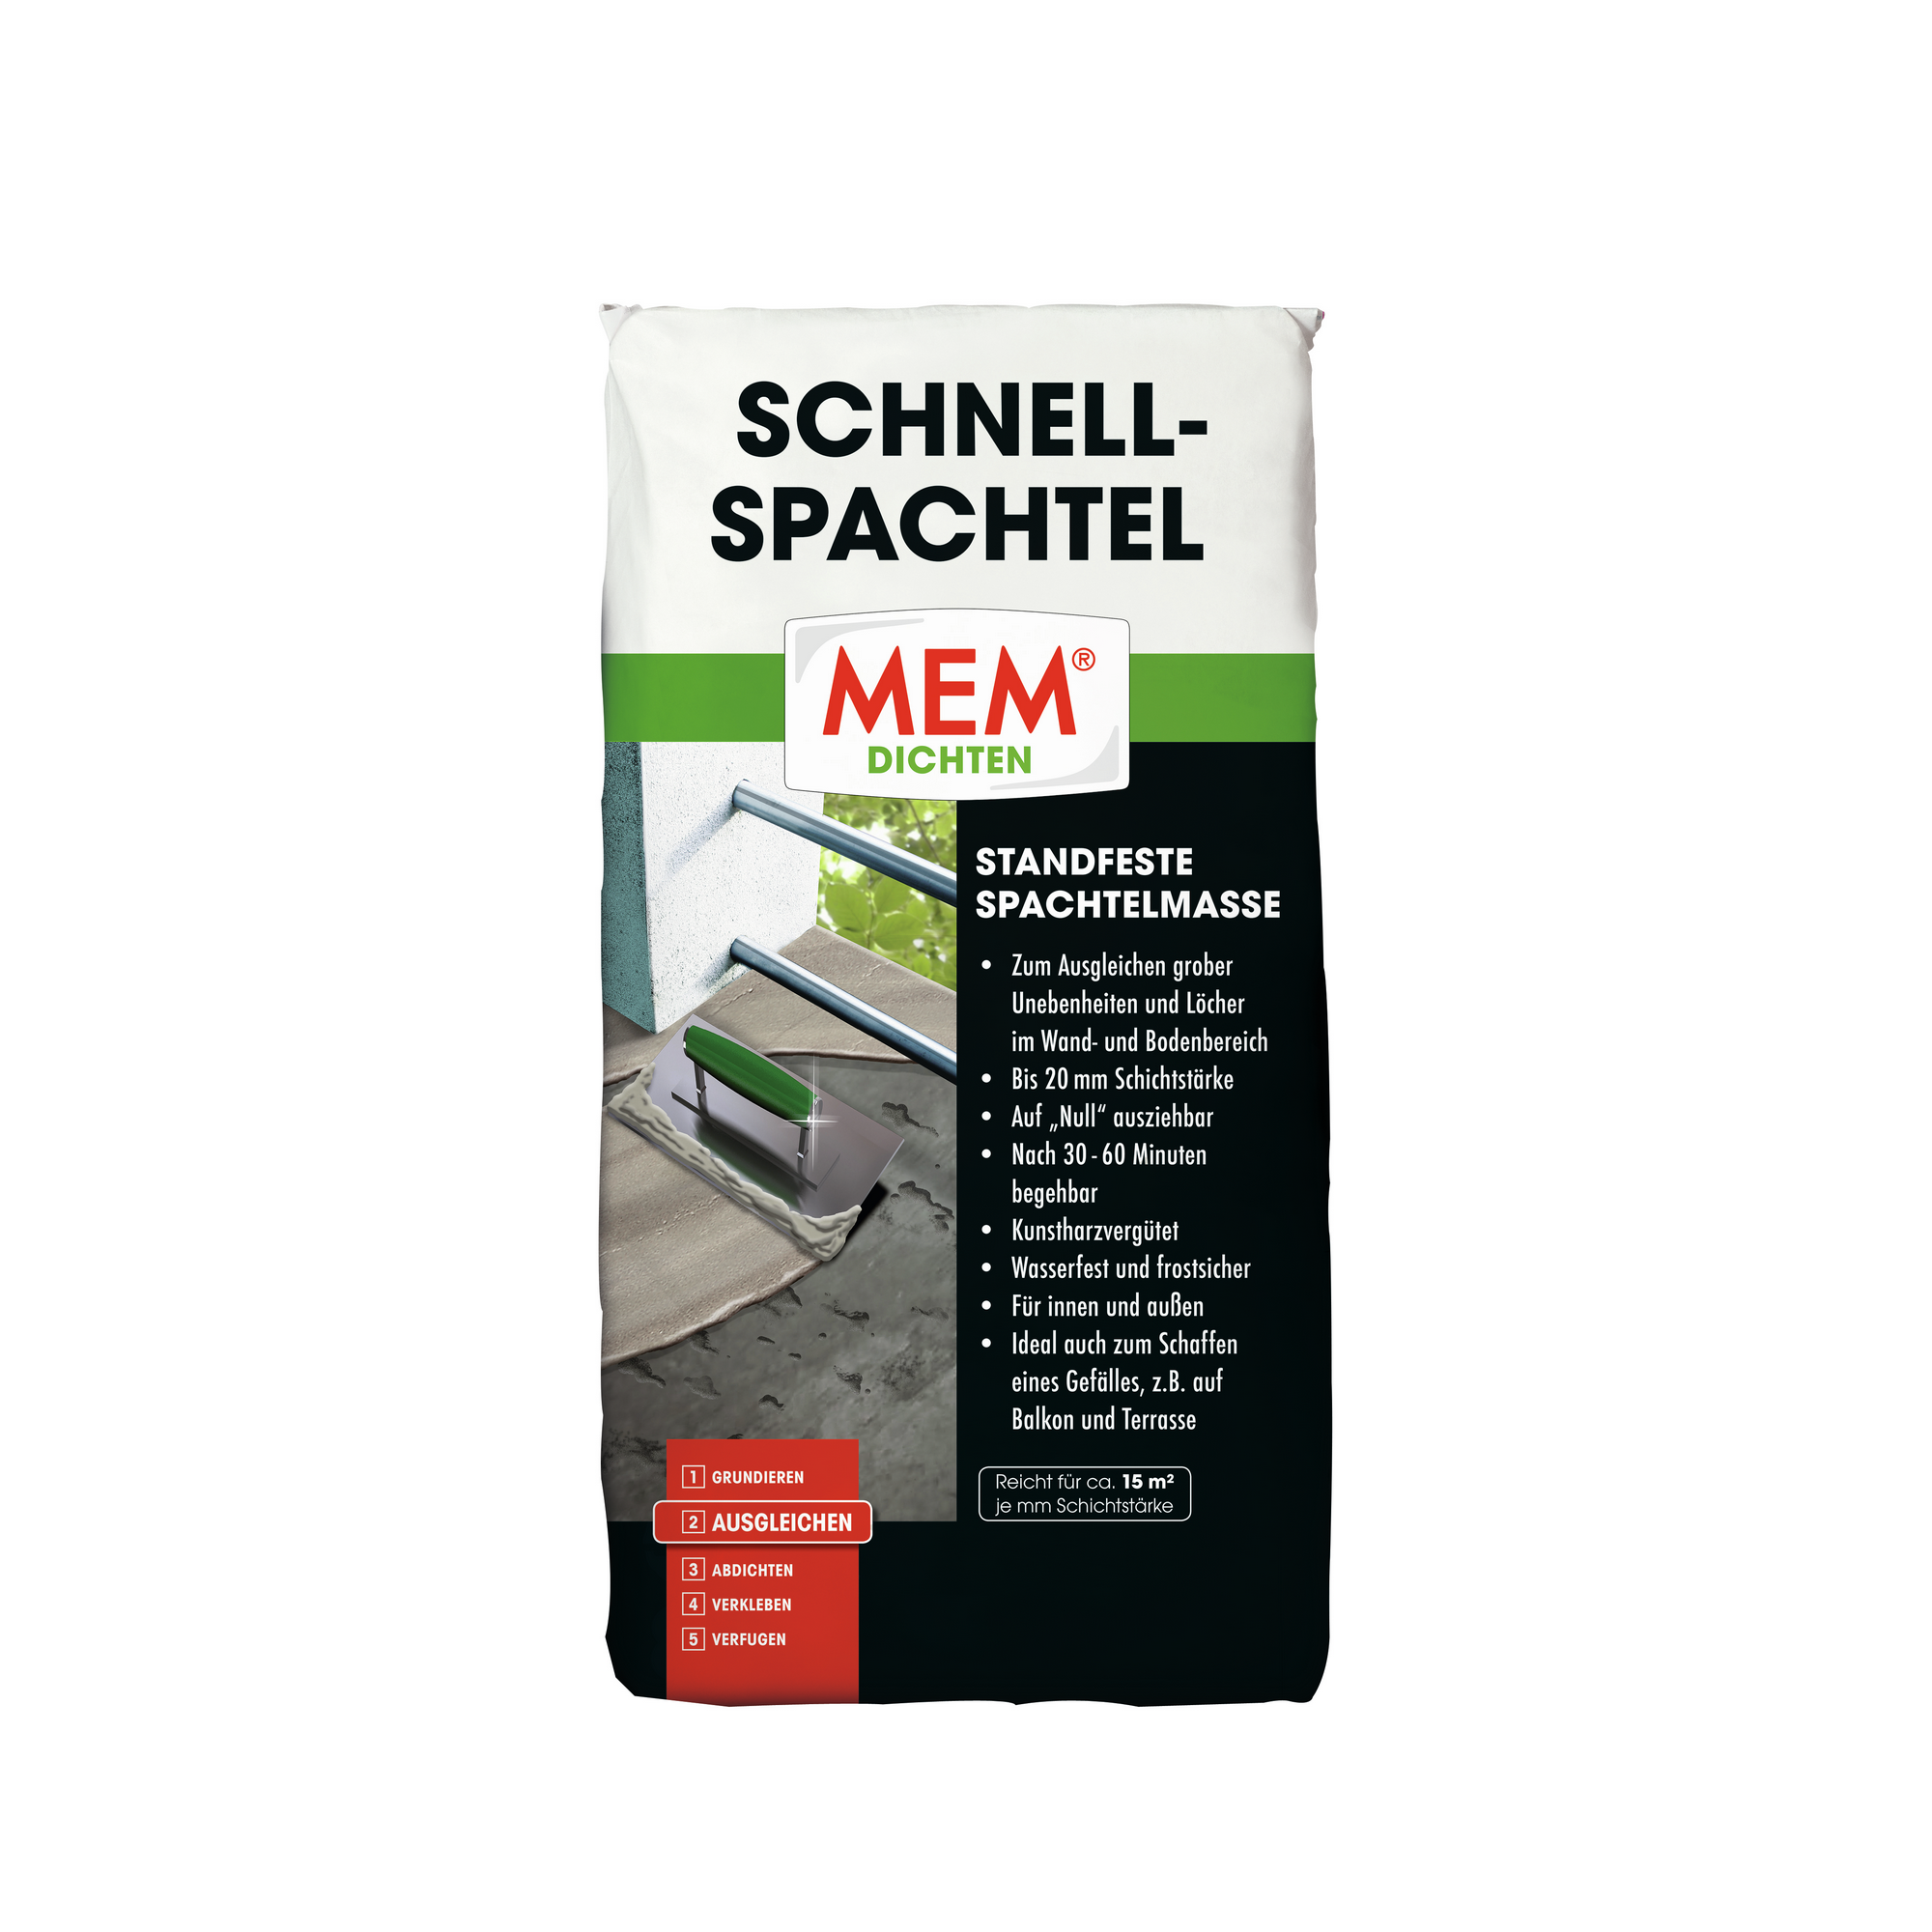 Schnell-Spachtel 'Dichten' 25 kg + product picture